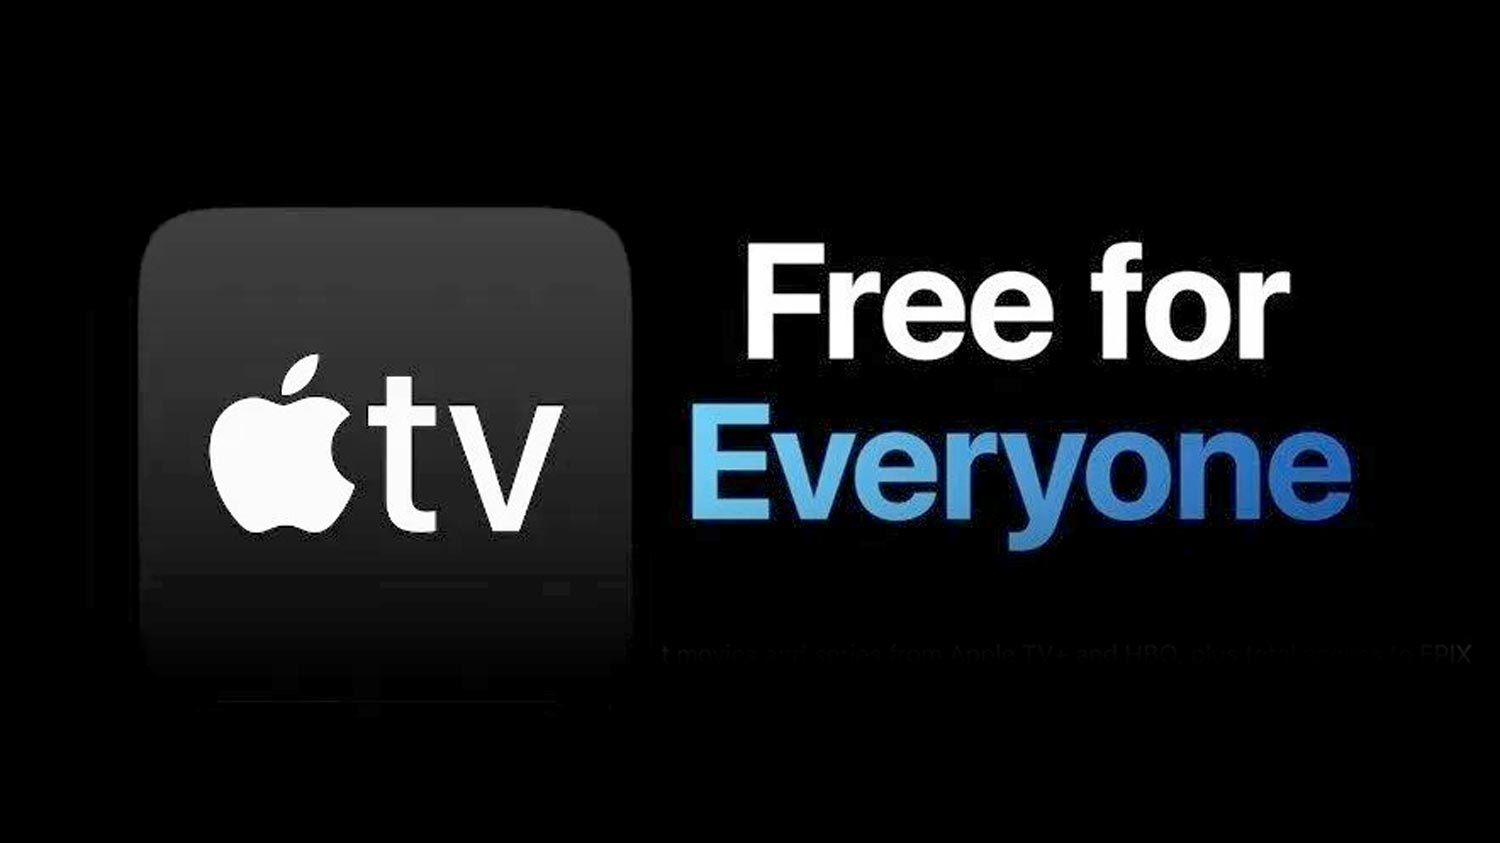 Apple TV+ Ditawarkan Percuma Kepada Semua Untuk Tempoh Terhad